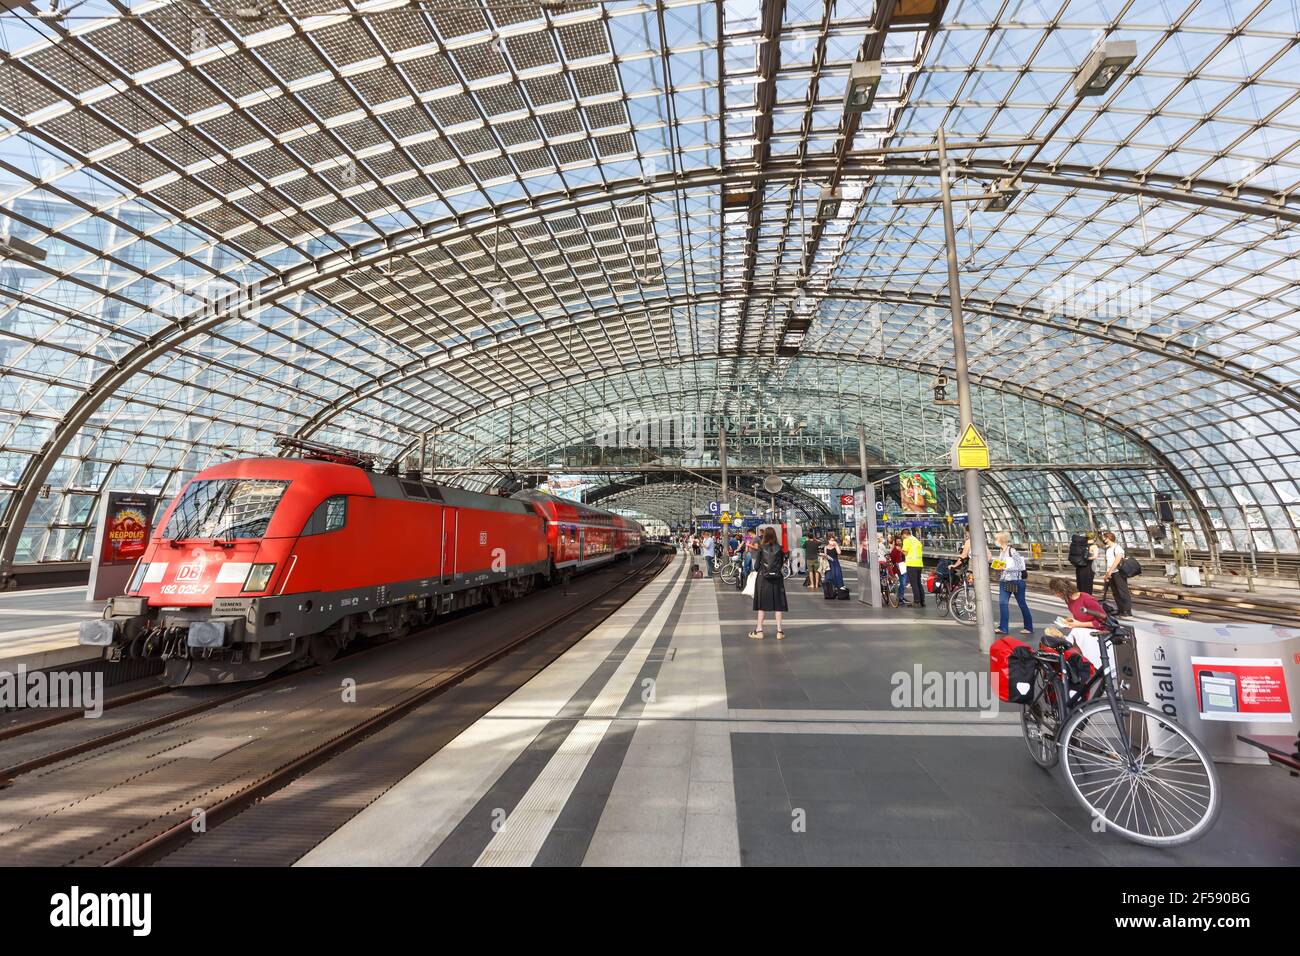 Berlino, Germania - 20 agosto 2020: Treno regionale suburbano alla stazione ferroviaria principale di Berlino Hauptbahnhof Hbf in Germania. Foto Stock